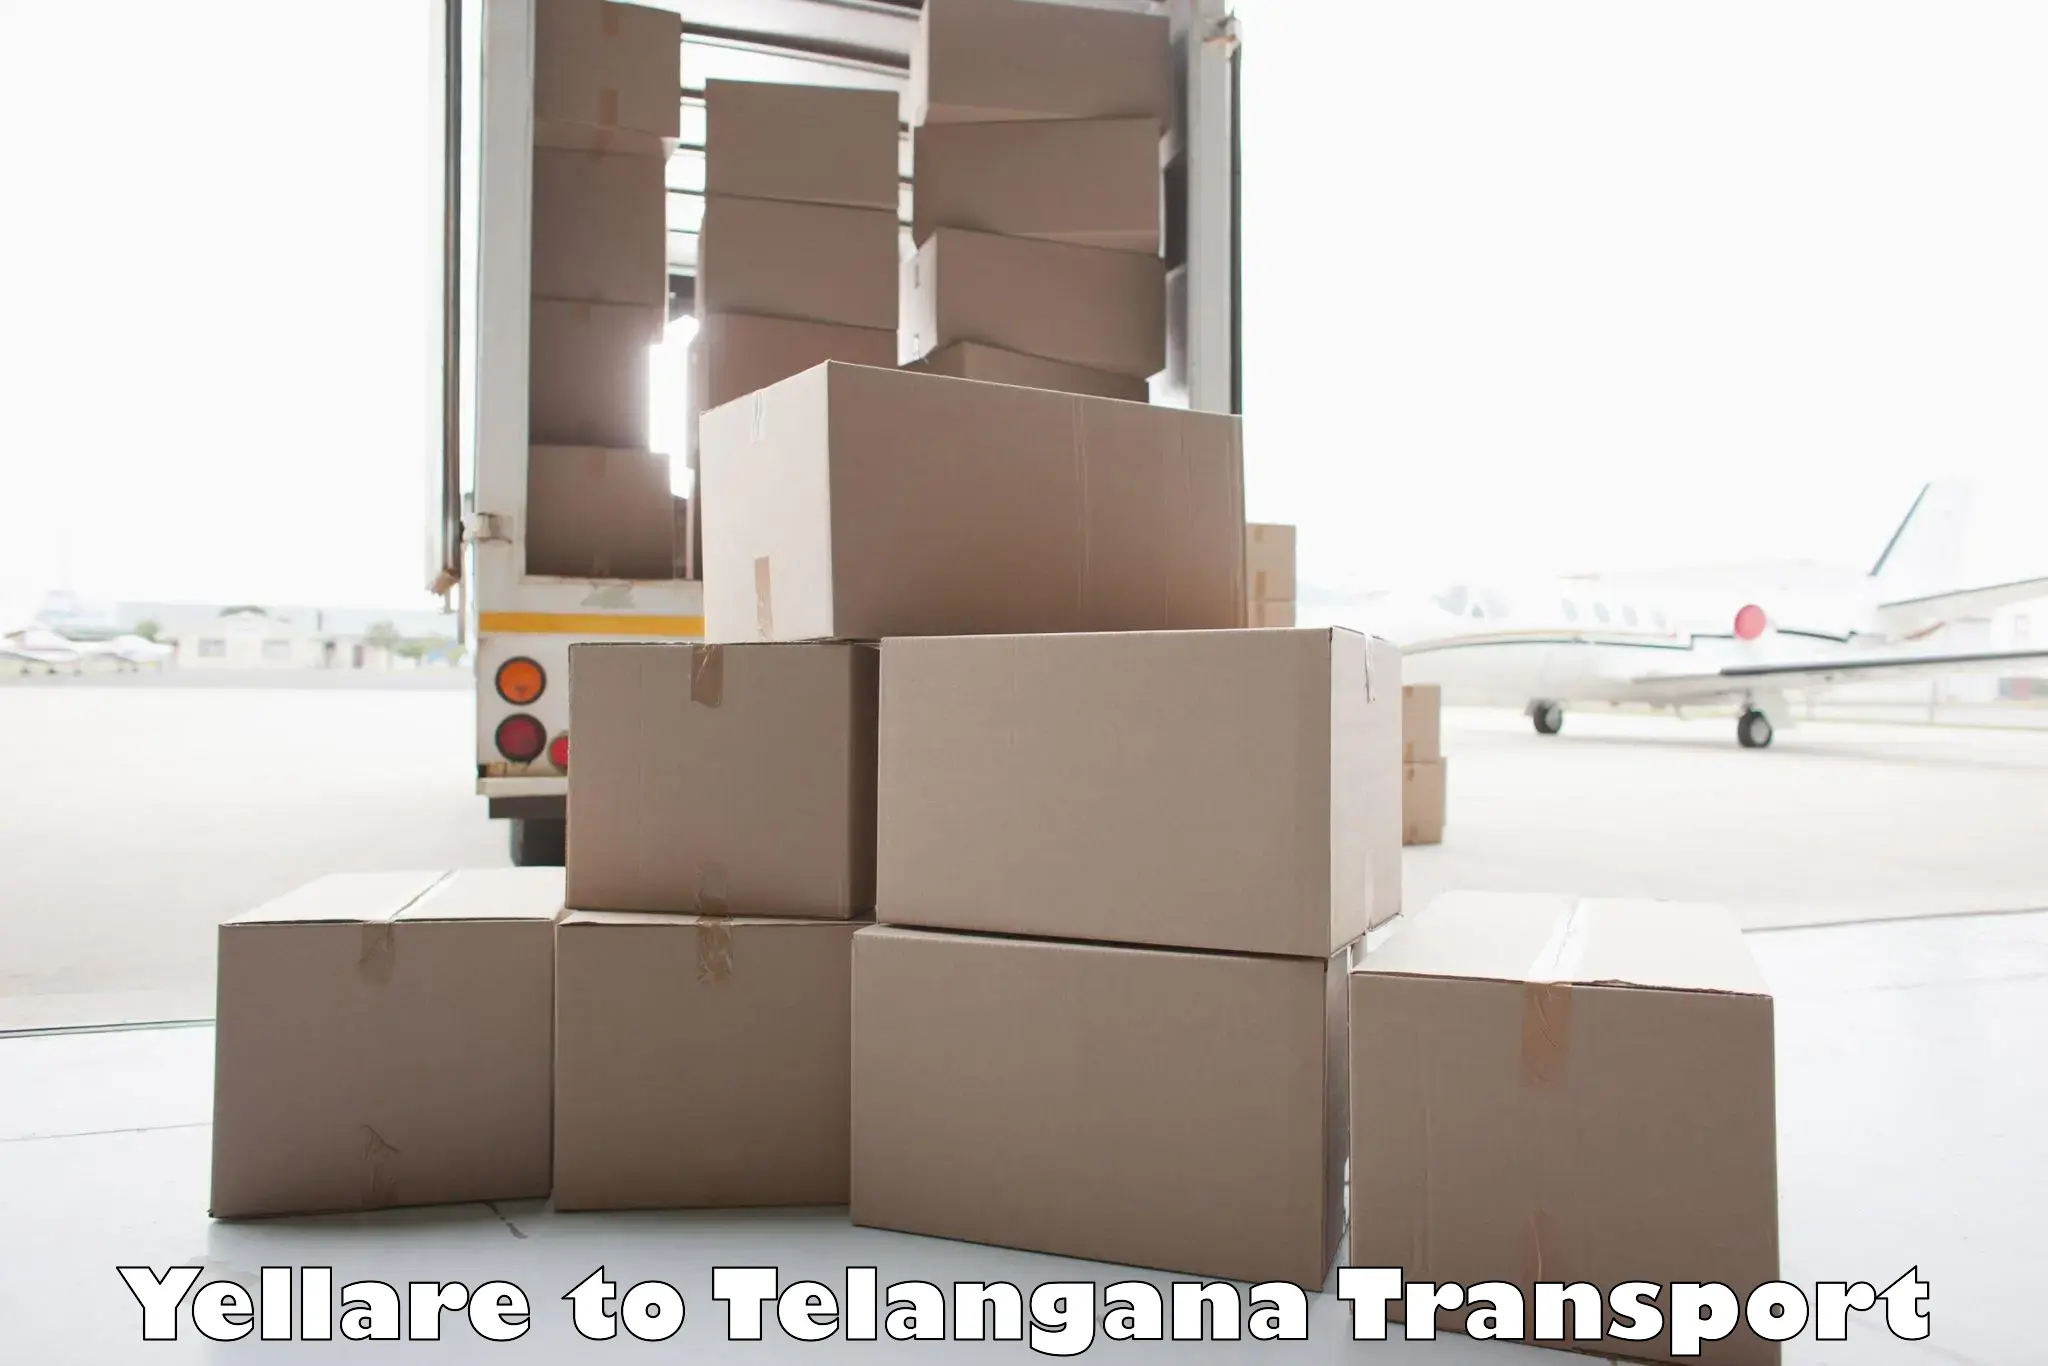 Furniture transport service Yellare to Bhuvanagiri